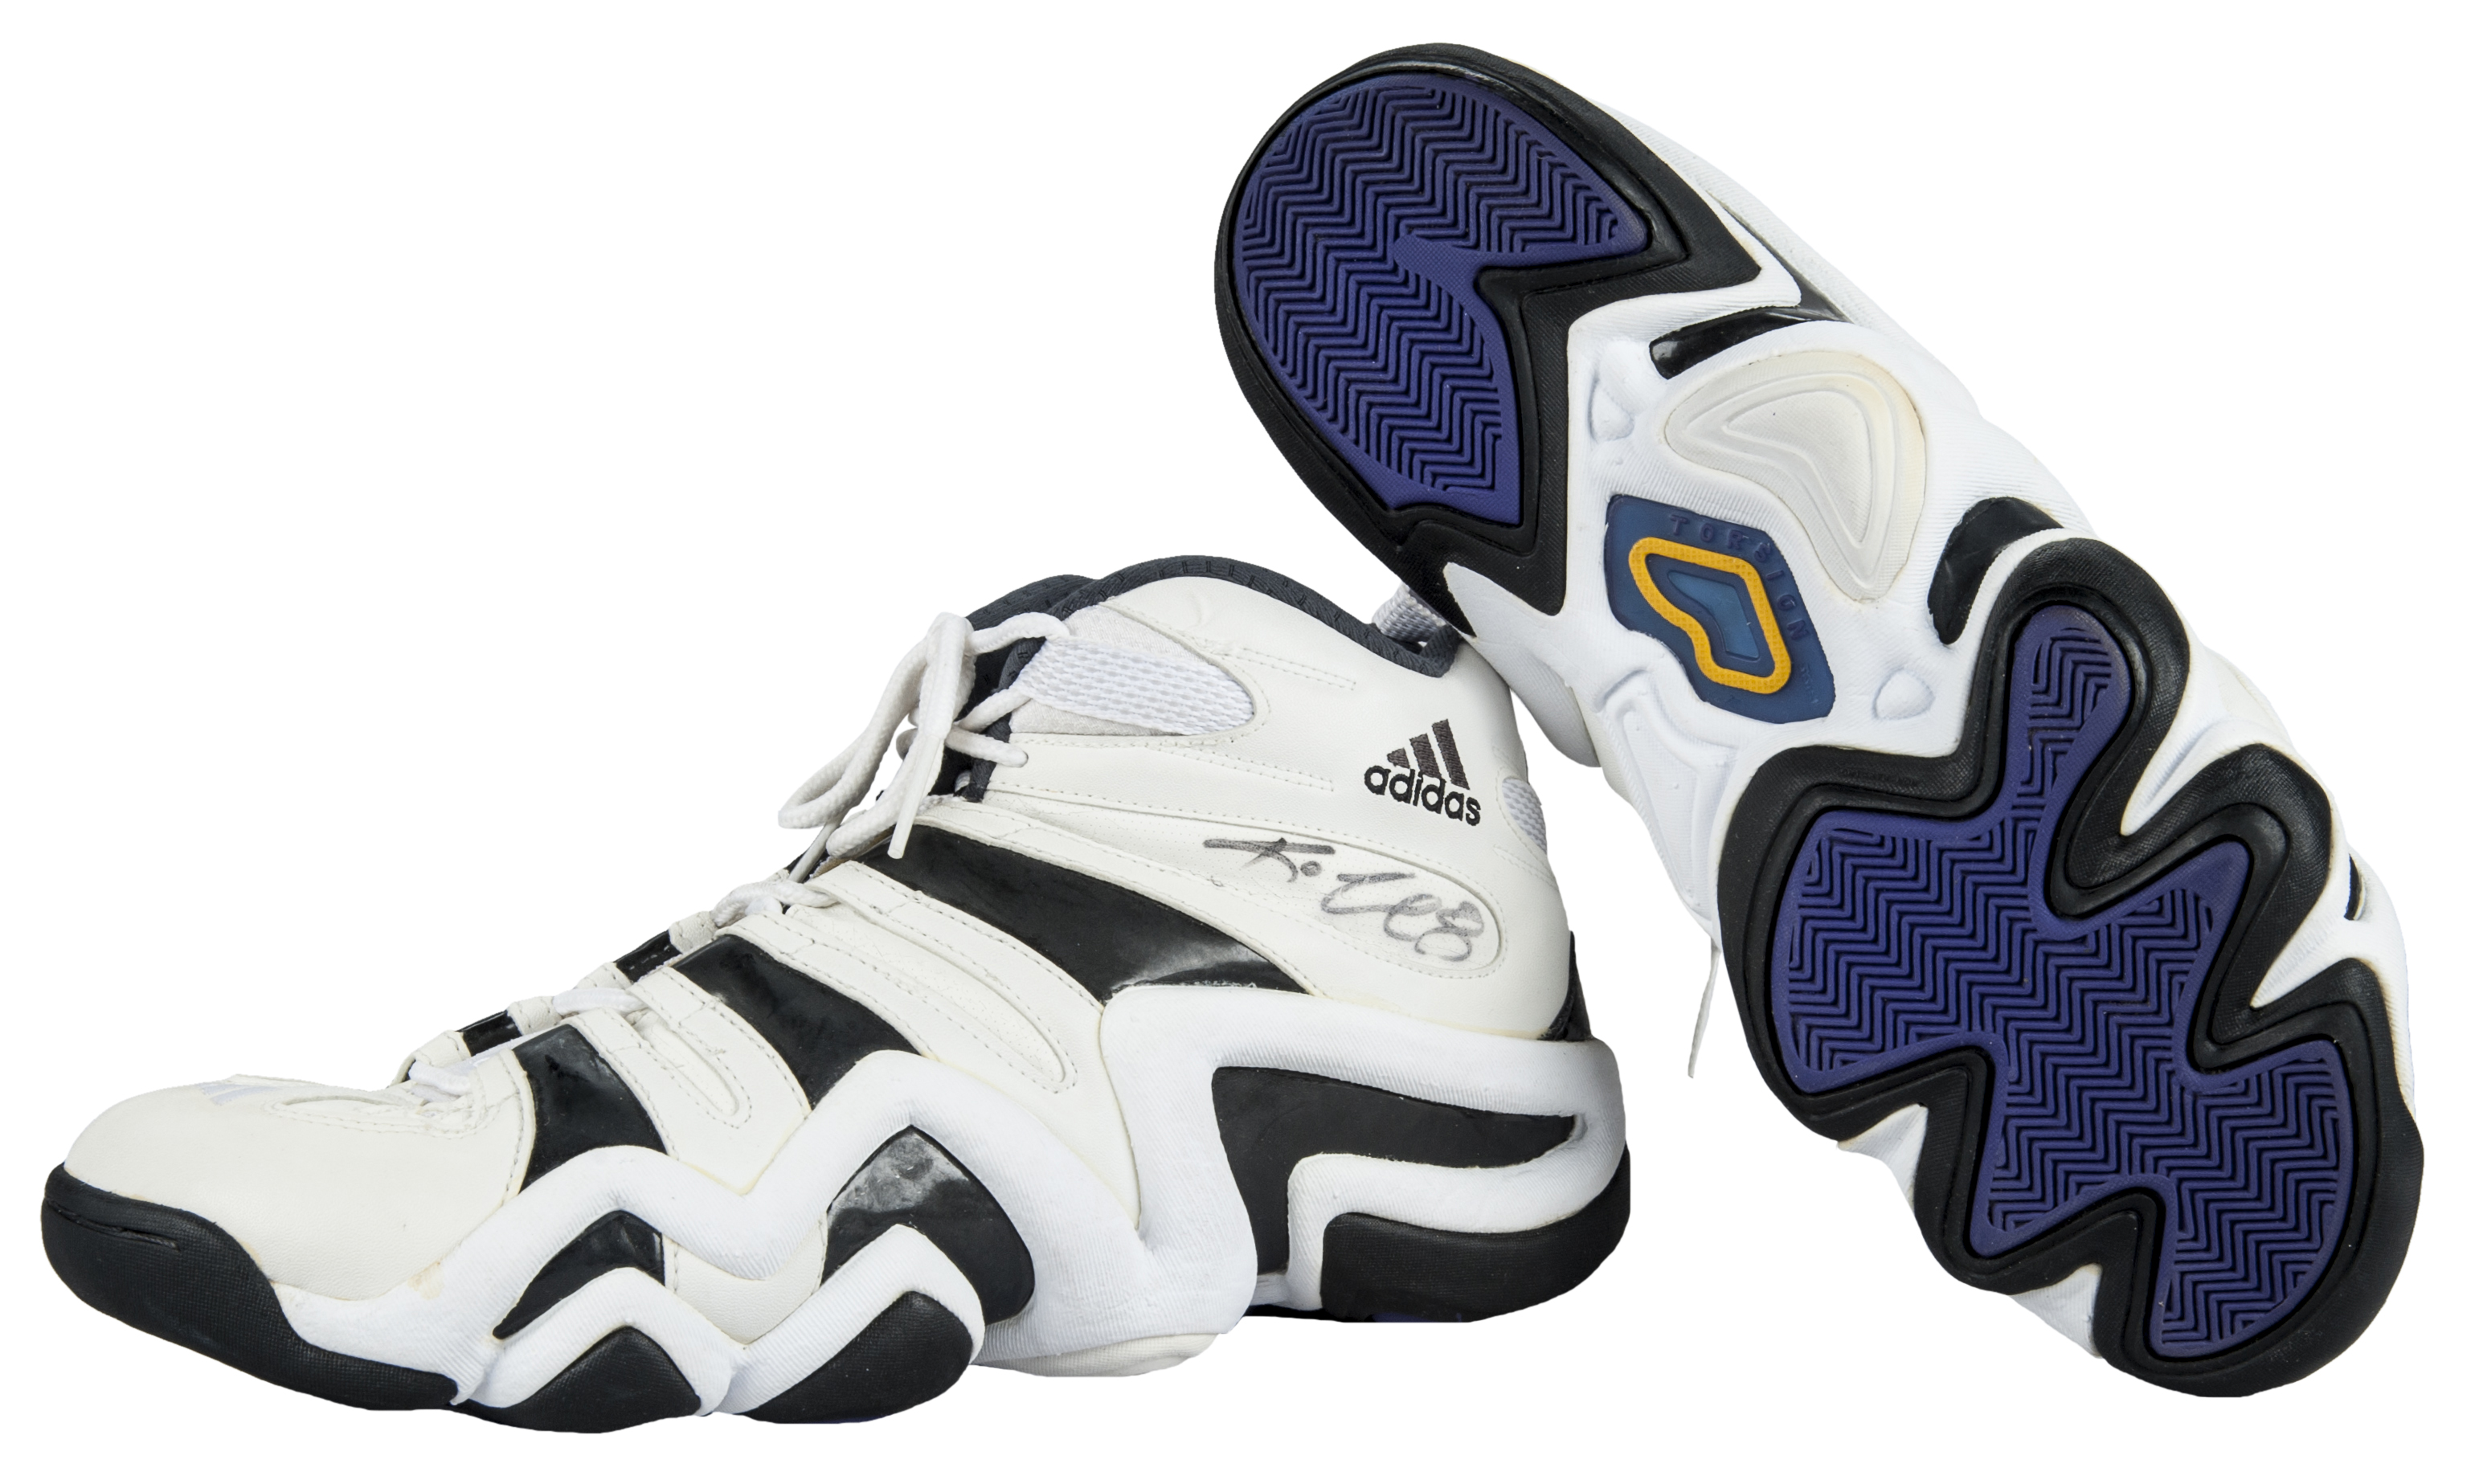 kobe bryant adidas shoes 1997